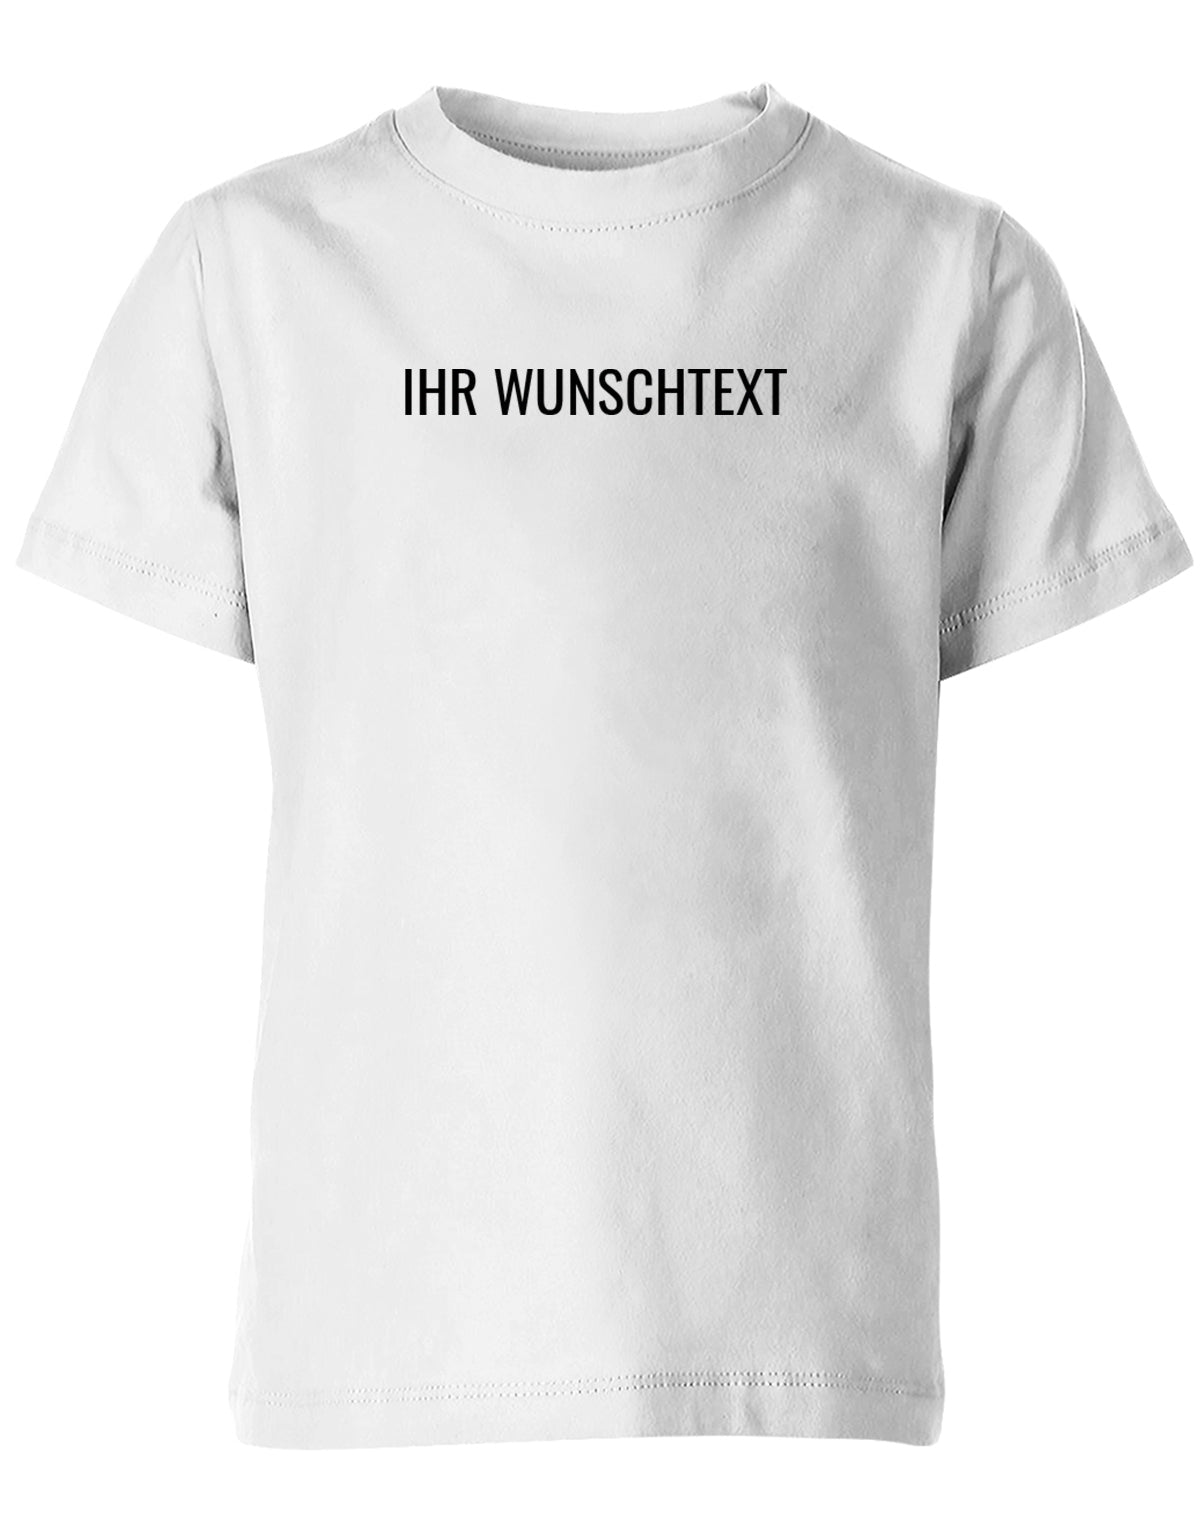 Kinder Tshirt mit Wunschtext.  Minimalistisches Design. Weiss